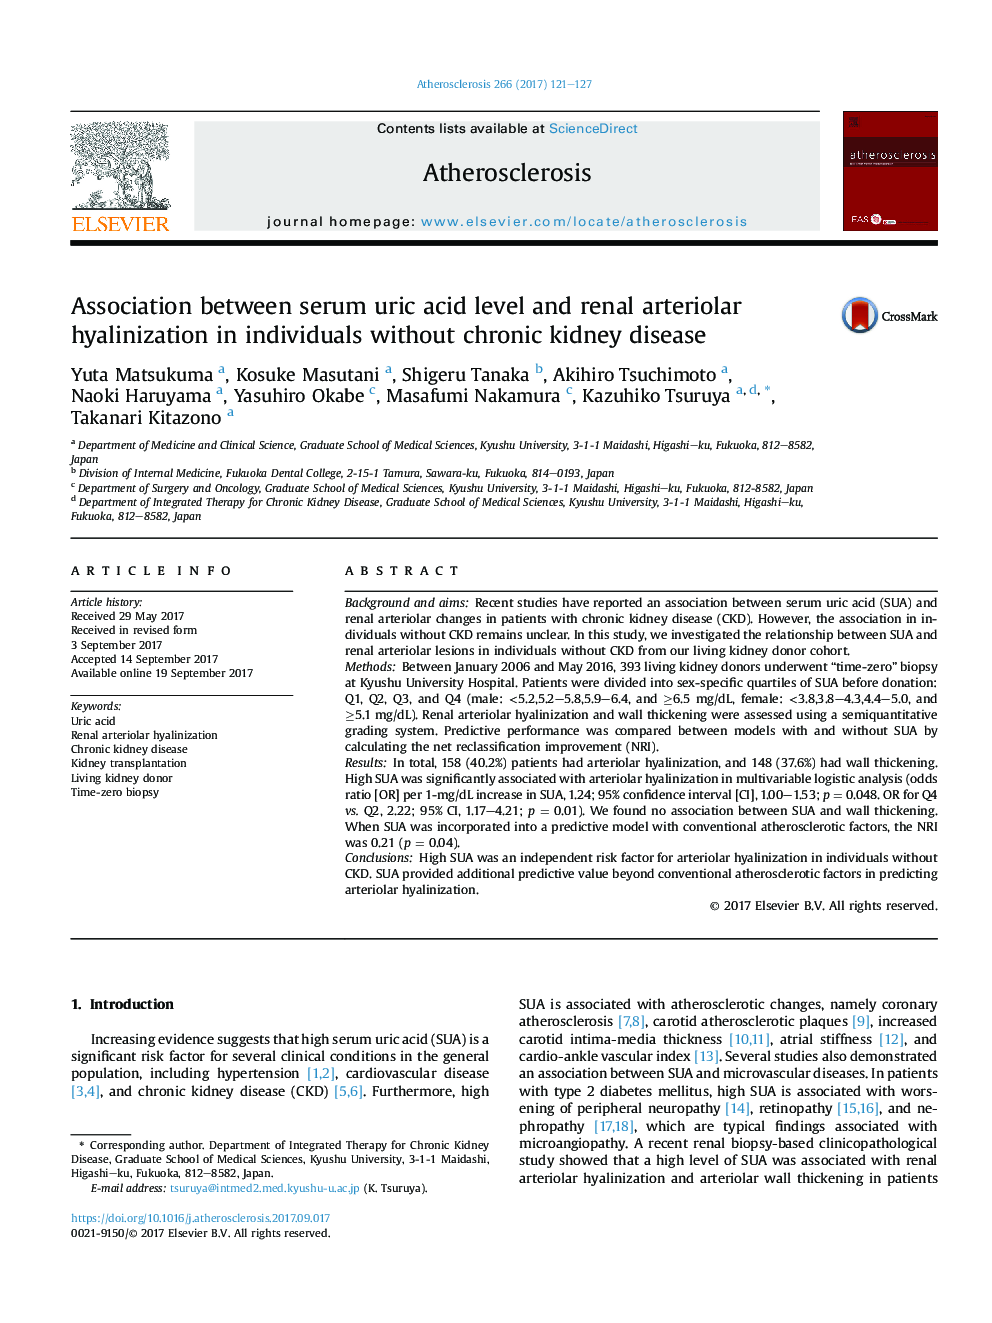 ارتباط بین سطح اسید اوریک سرم و هیالینیزاسیون آرترولیال کلیه در افراد بدون بیماری مزمن کلیه 